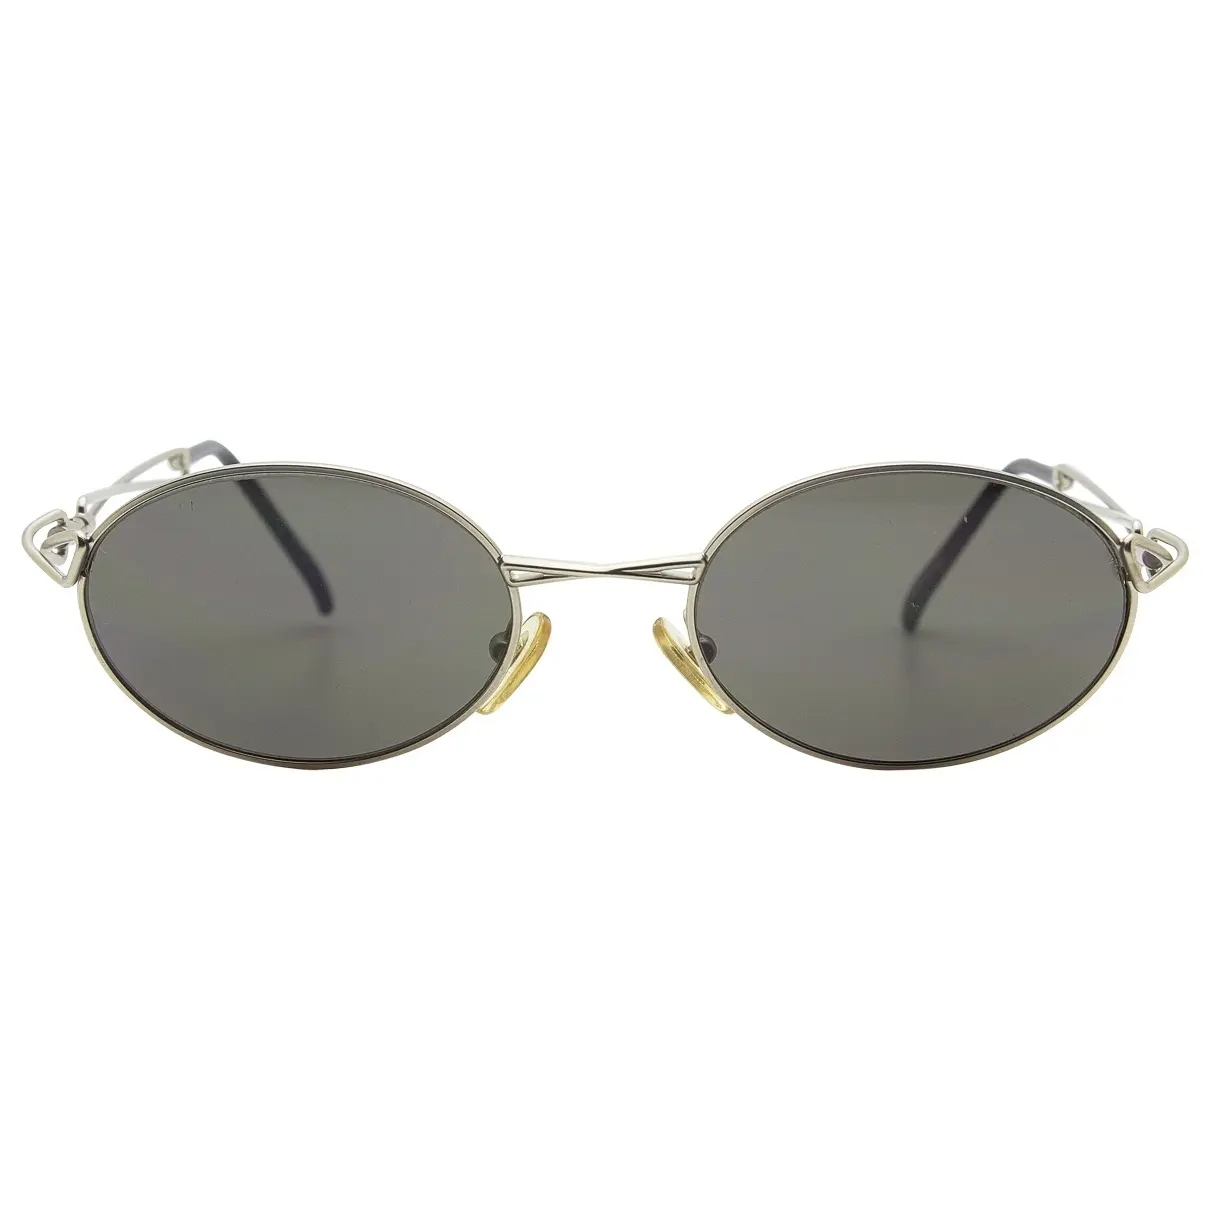 Sunglasses Karl Lagerfeld - Vintage